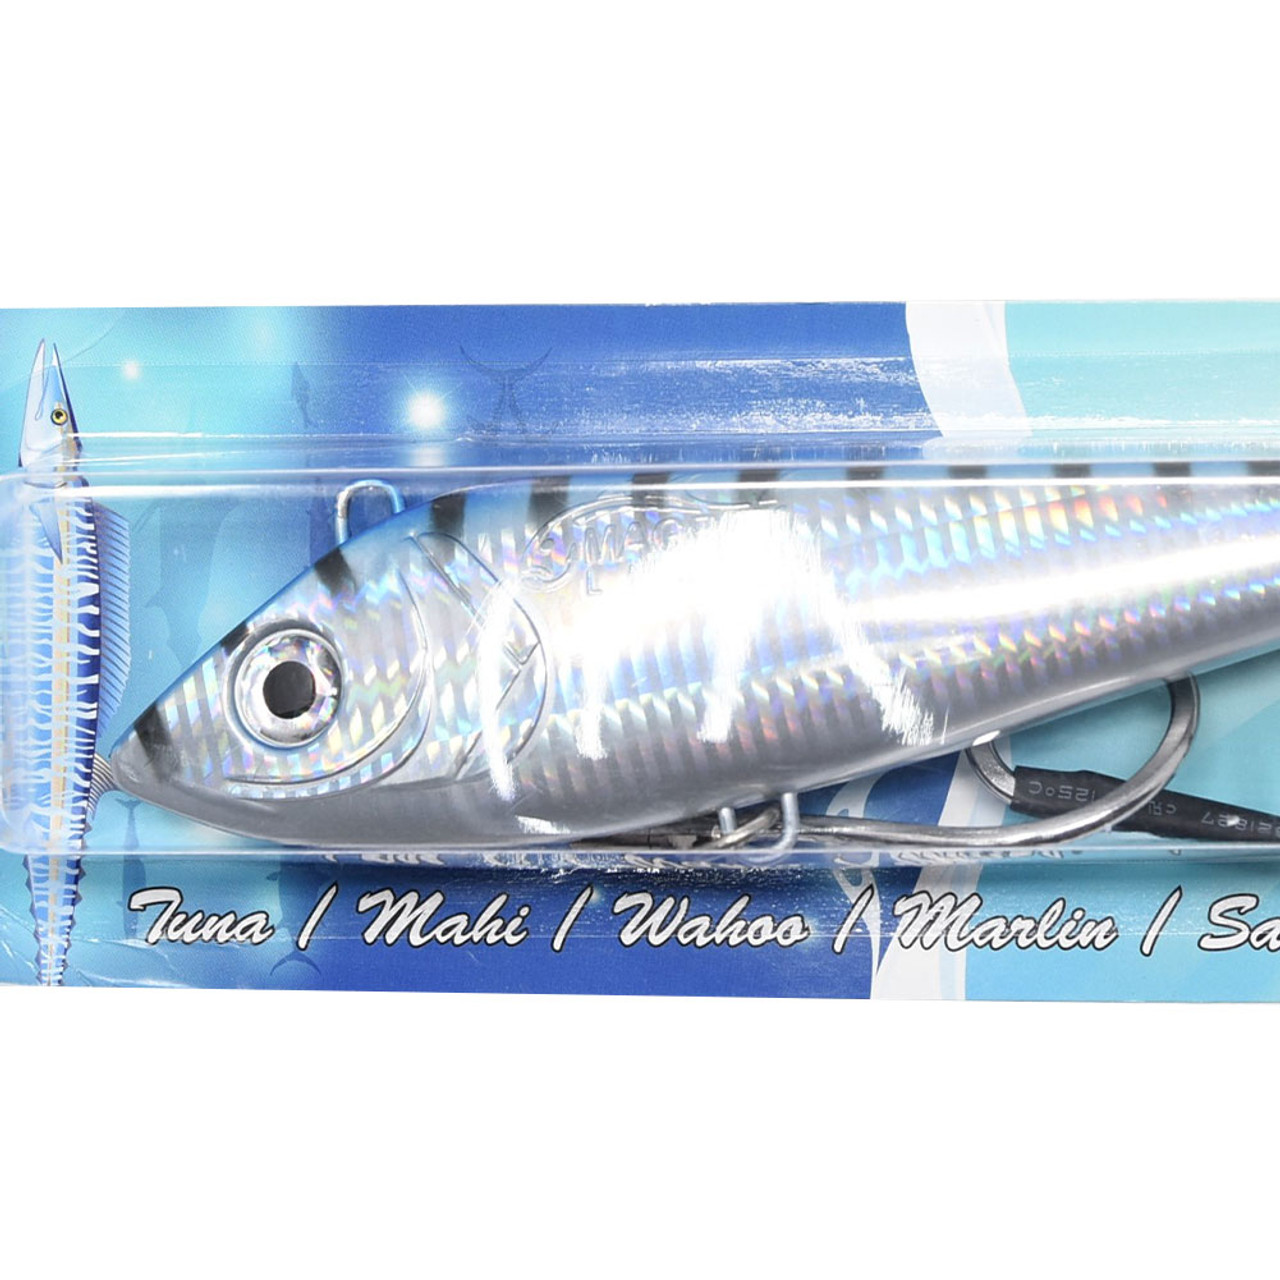 LARGE DORADO DANK 13 Trolling Lure MagBay Marlin Tuna Mahi Wahoo